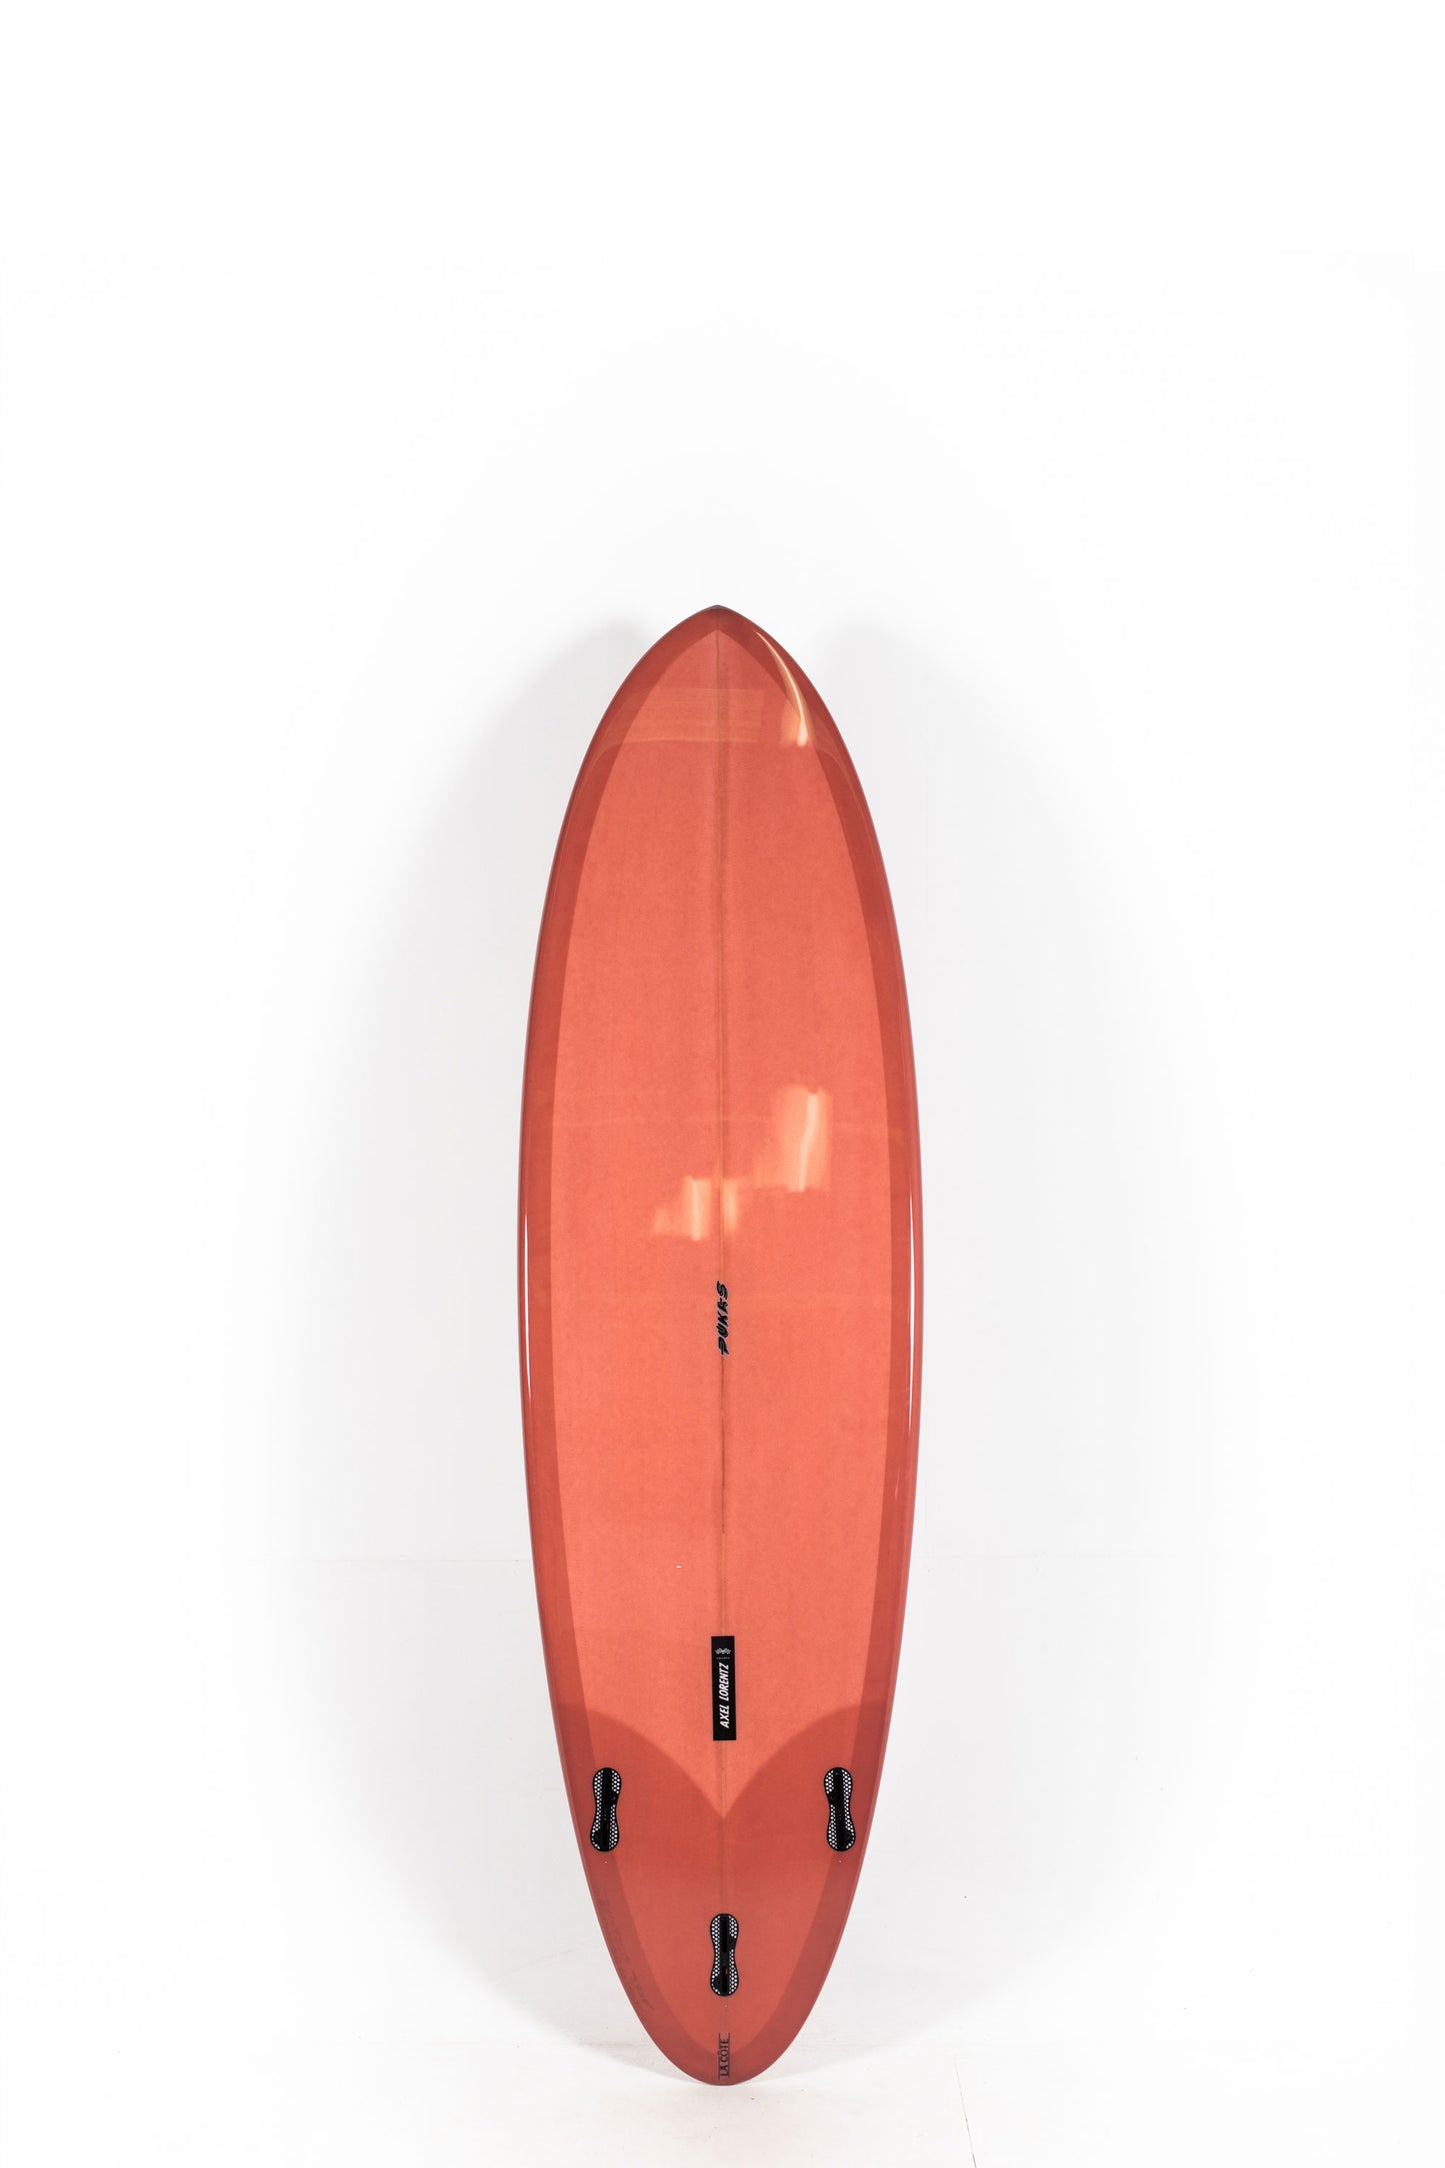 Pukas Surf Shop - Pukas Surfboard - LA CÔTE by Axel Lorentz - 6´7" x 21,18 x 2,84 - 43,15L -  AX09627